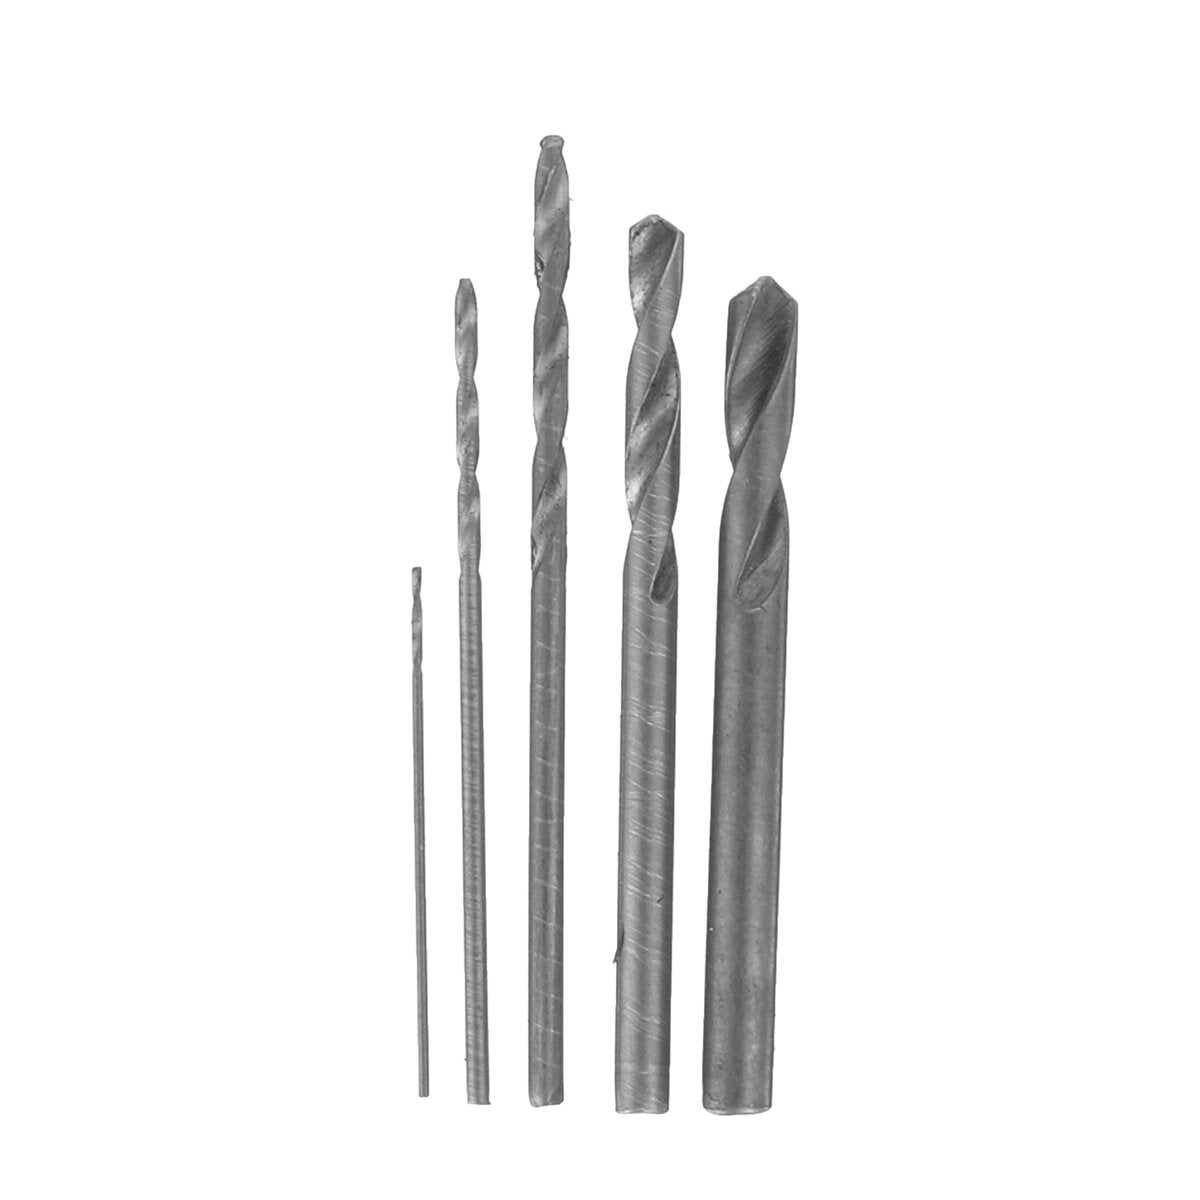 18 stuks 3.6 v usb oplaadbare dhz elektrische graveerpen carve tool voor sieraden metaal glas keramiek